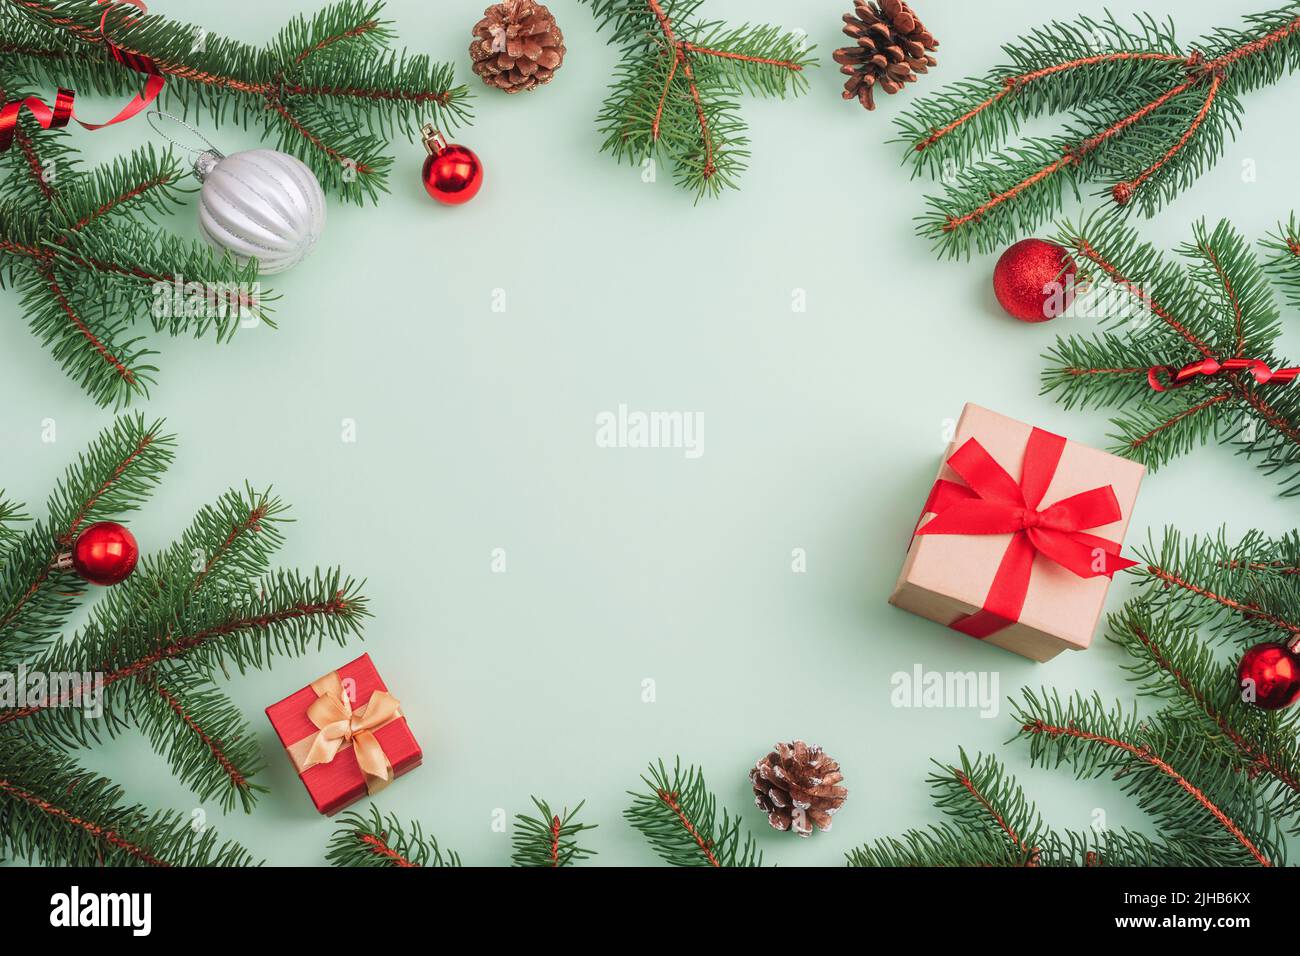 Decorazioni natalizie, scatole regalo, rami di abete, baubles e coni di pino su sfondo verde chiaro. Vista dall'alto, disposizione piatta, spazio di copia. Foto Stock